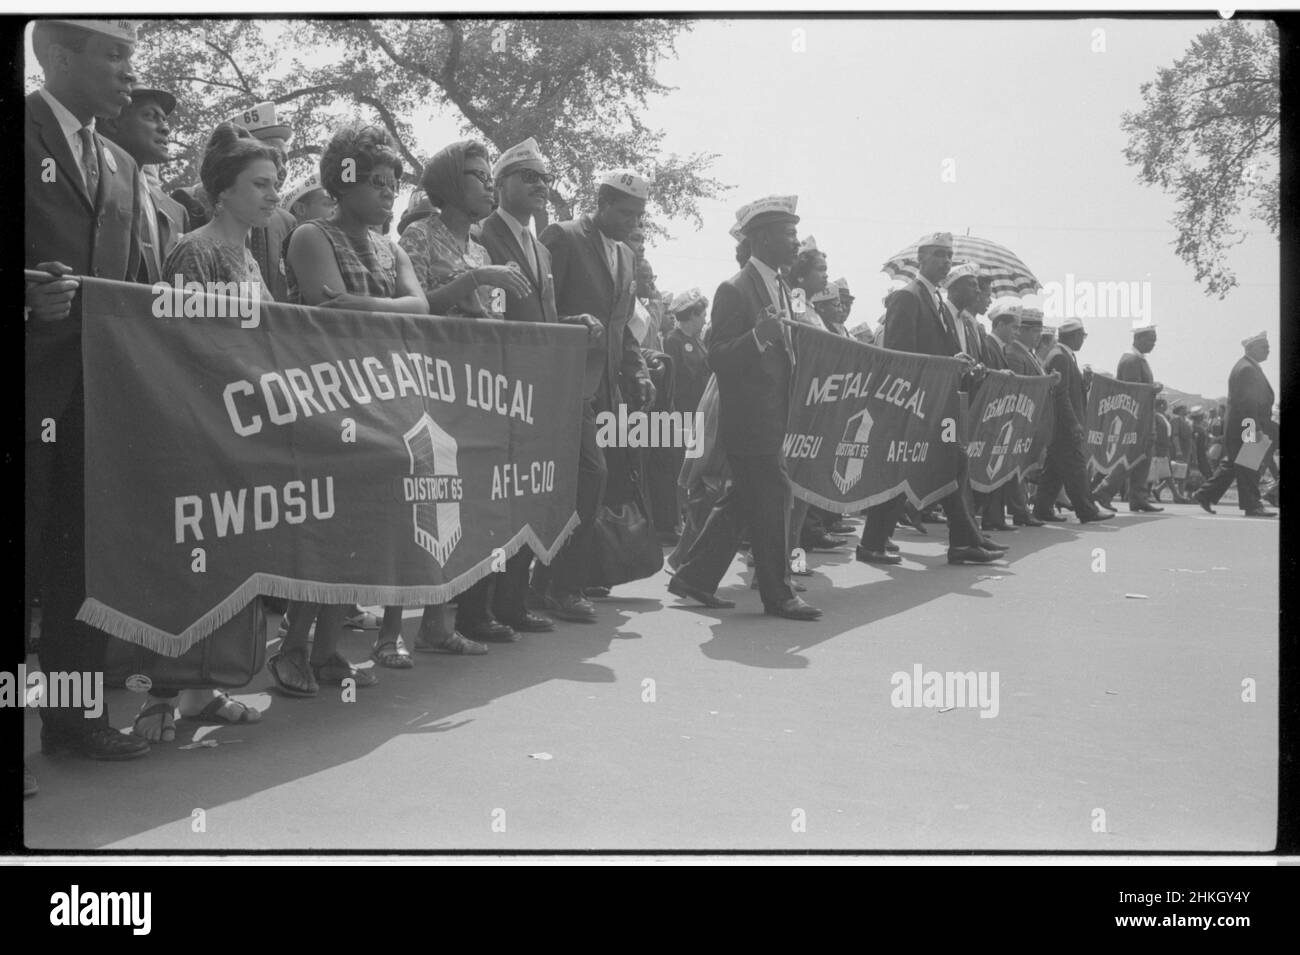 Marchers che trasportano i banner sindacali, compreso una lettura 'Corrugated Local RWDSU District 65, AFL-CIO' durante la marcia su Washington, 28 agosto 1963. Foto di Marion S Trikosko Foto Stock